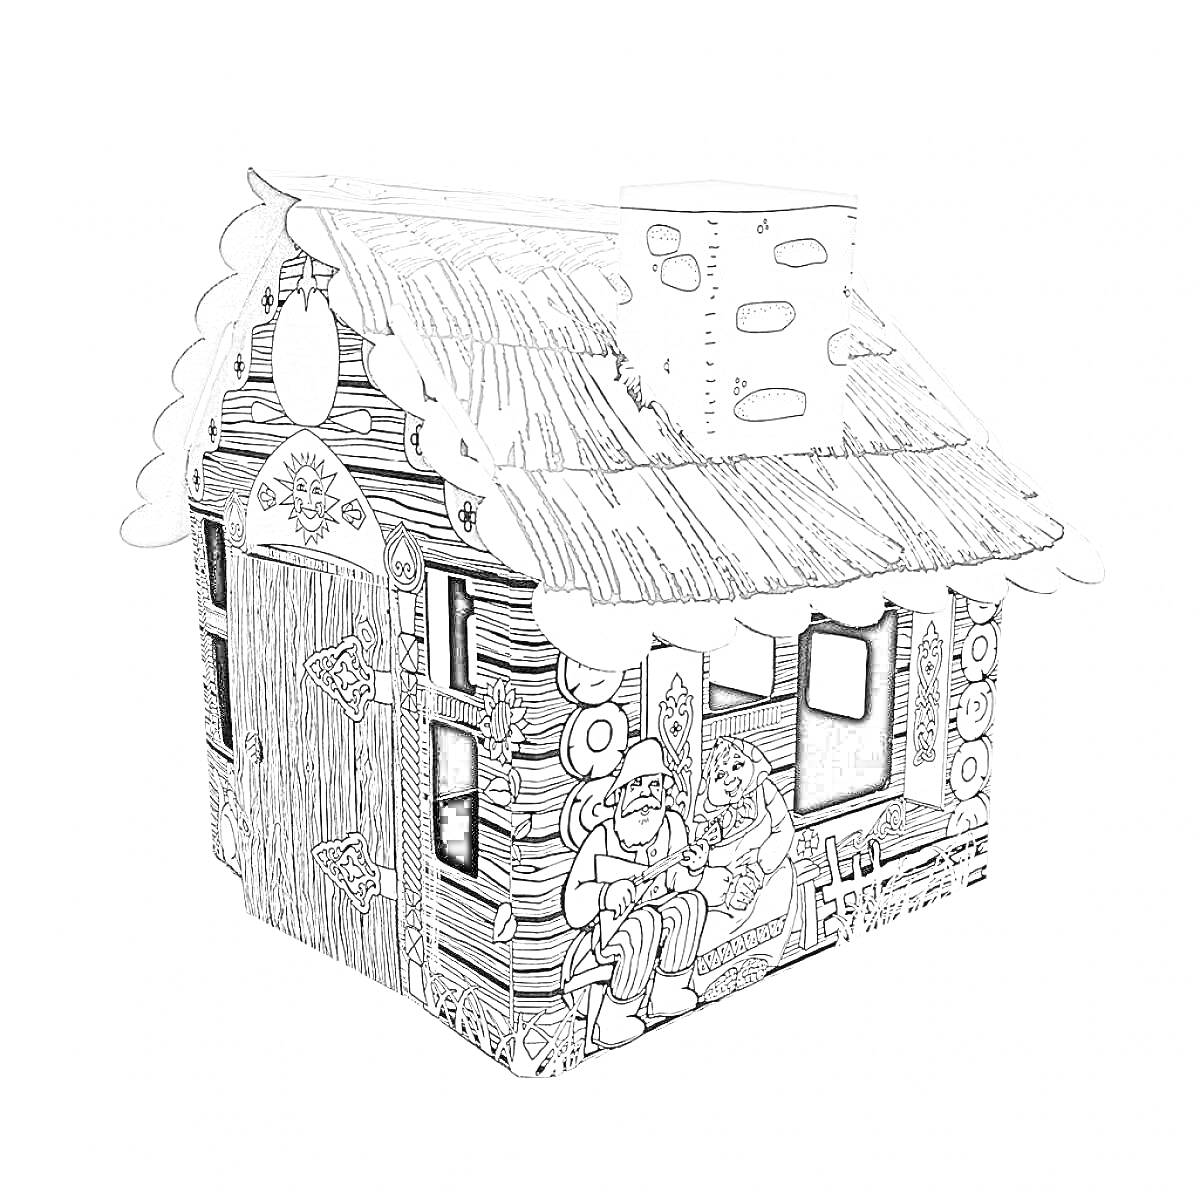 Раскраска Картонный домик для раскрашивания с изображением сказочных персонажей, окнами, дверьми и декоративными элементами на крыше и стенах